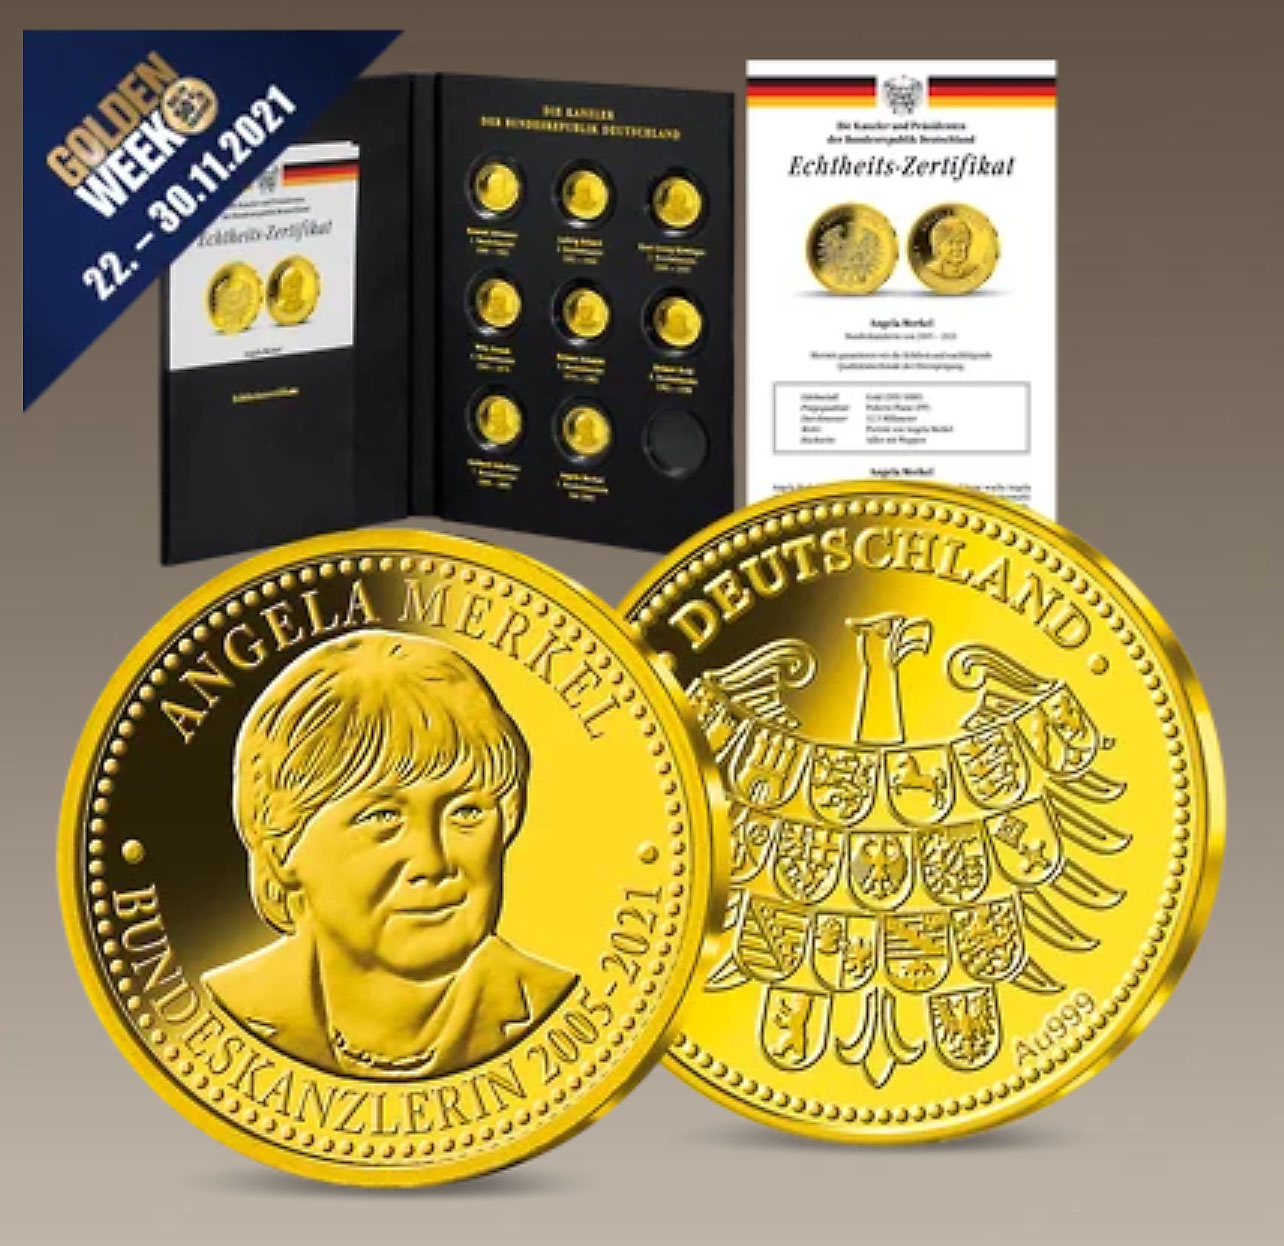 В честь 16-летия правления Меркель была выпущена монета 999-й пробы.